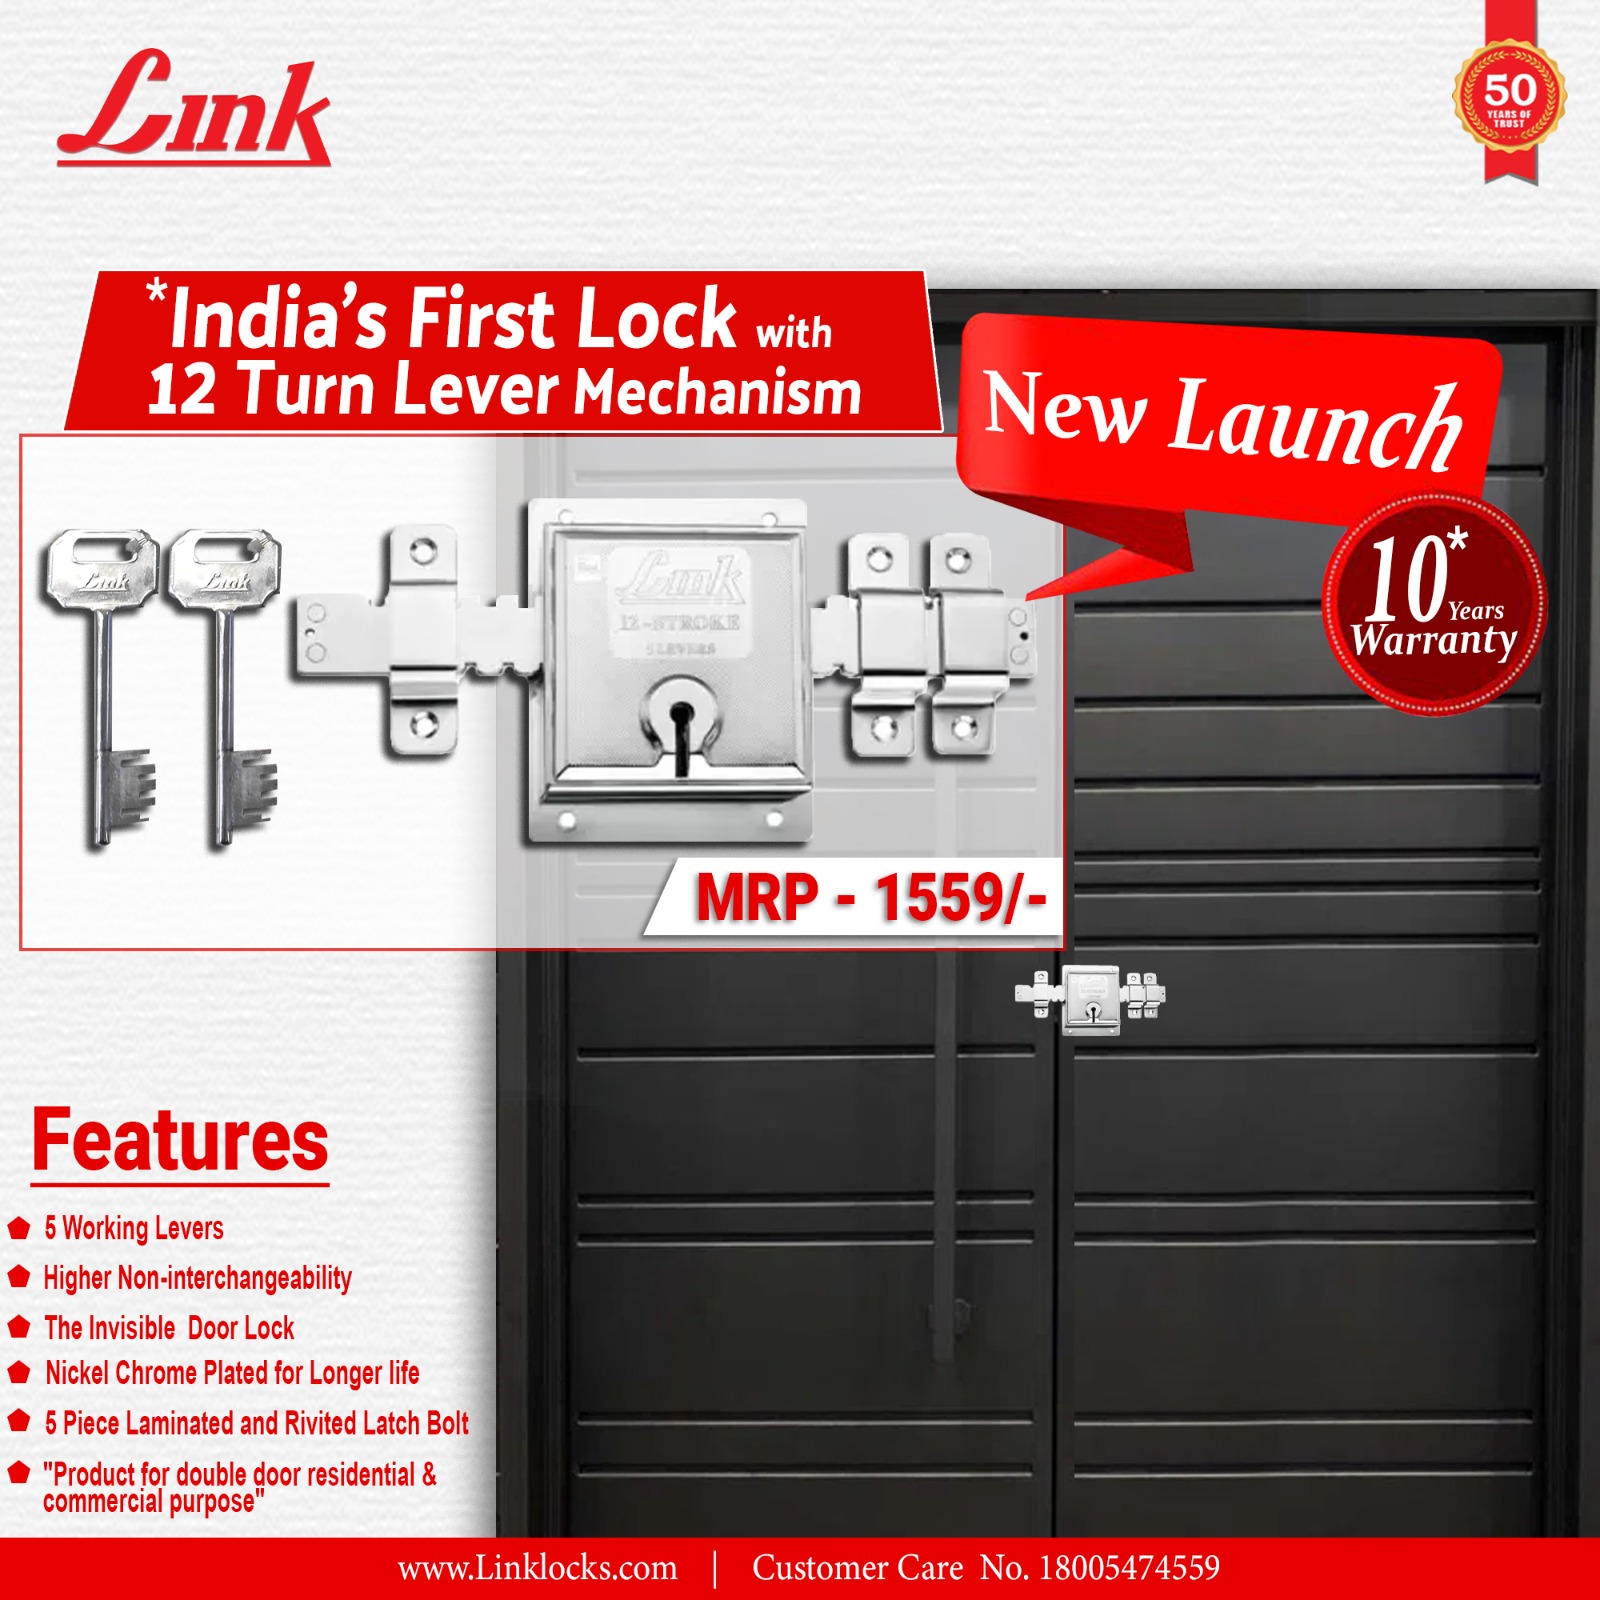 Link Locks 12 turn shutter/door lock comprises 5 levers